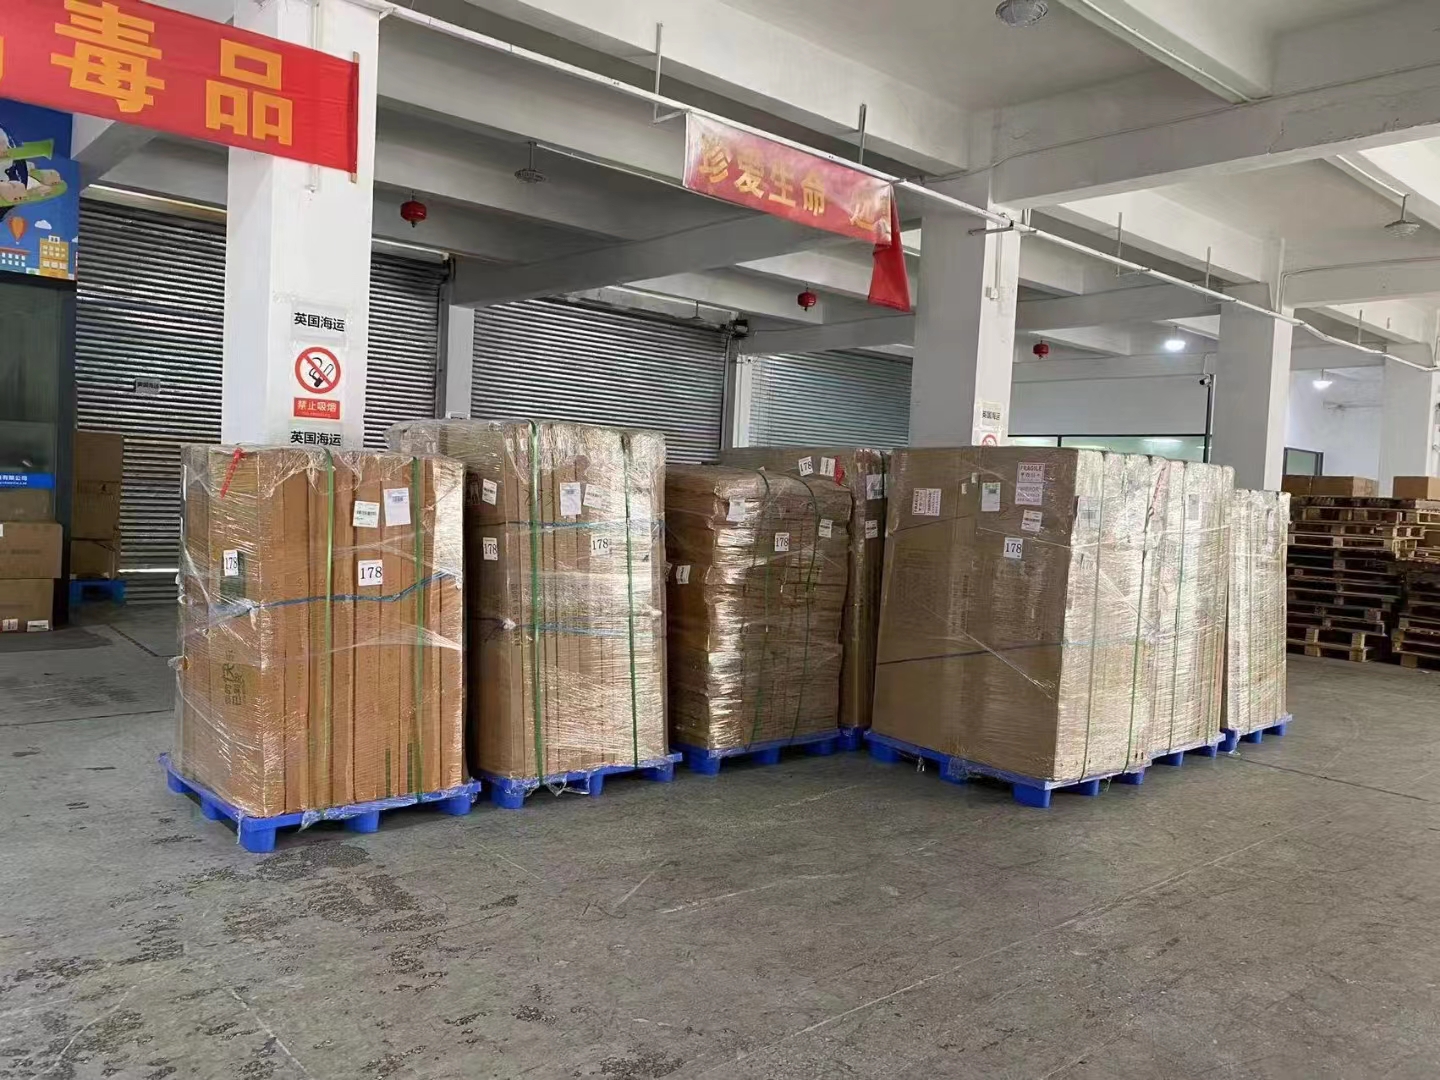 电子产品的专线运输服务，这些货物将被运送到乌兹别克斯坦